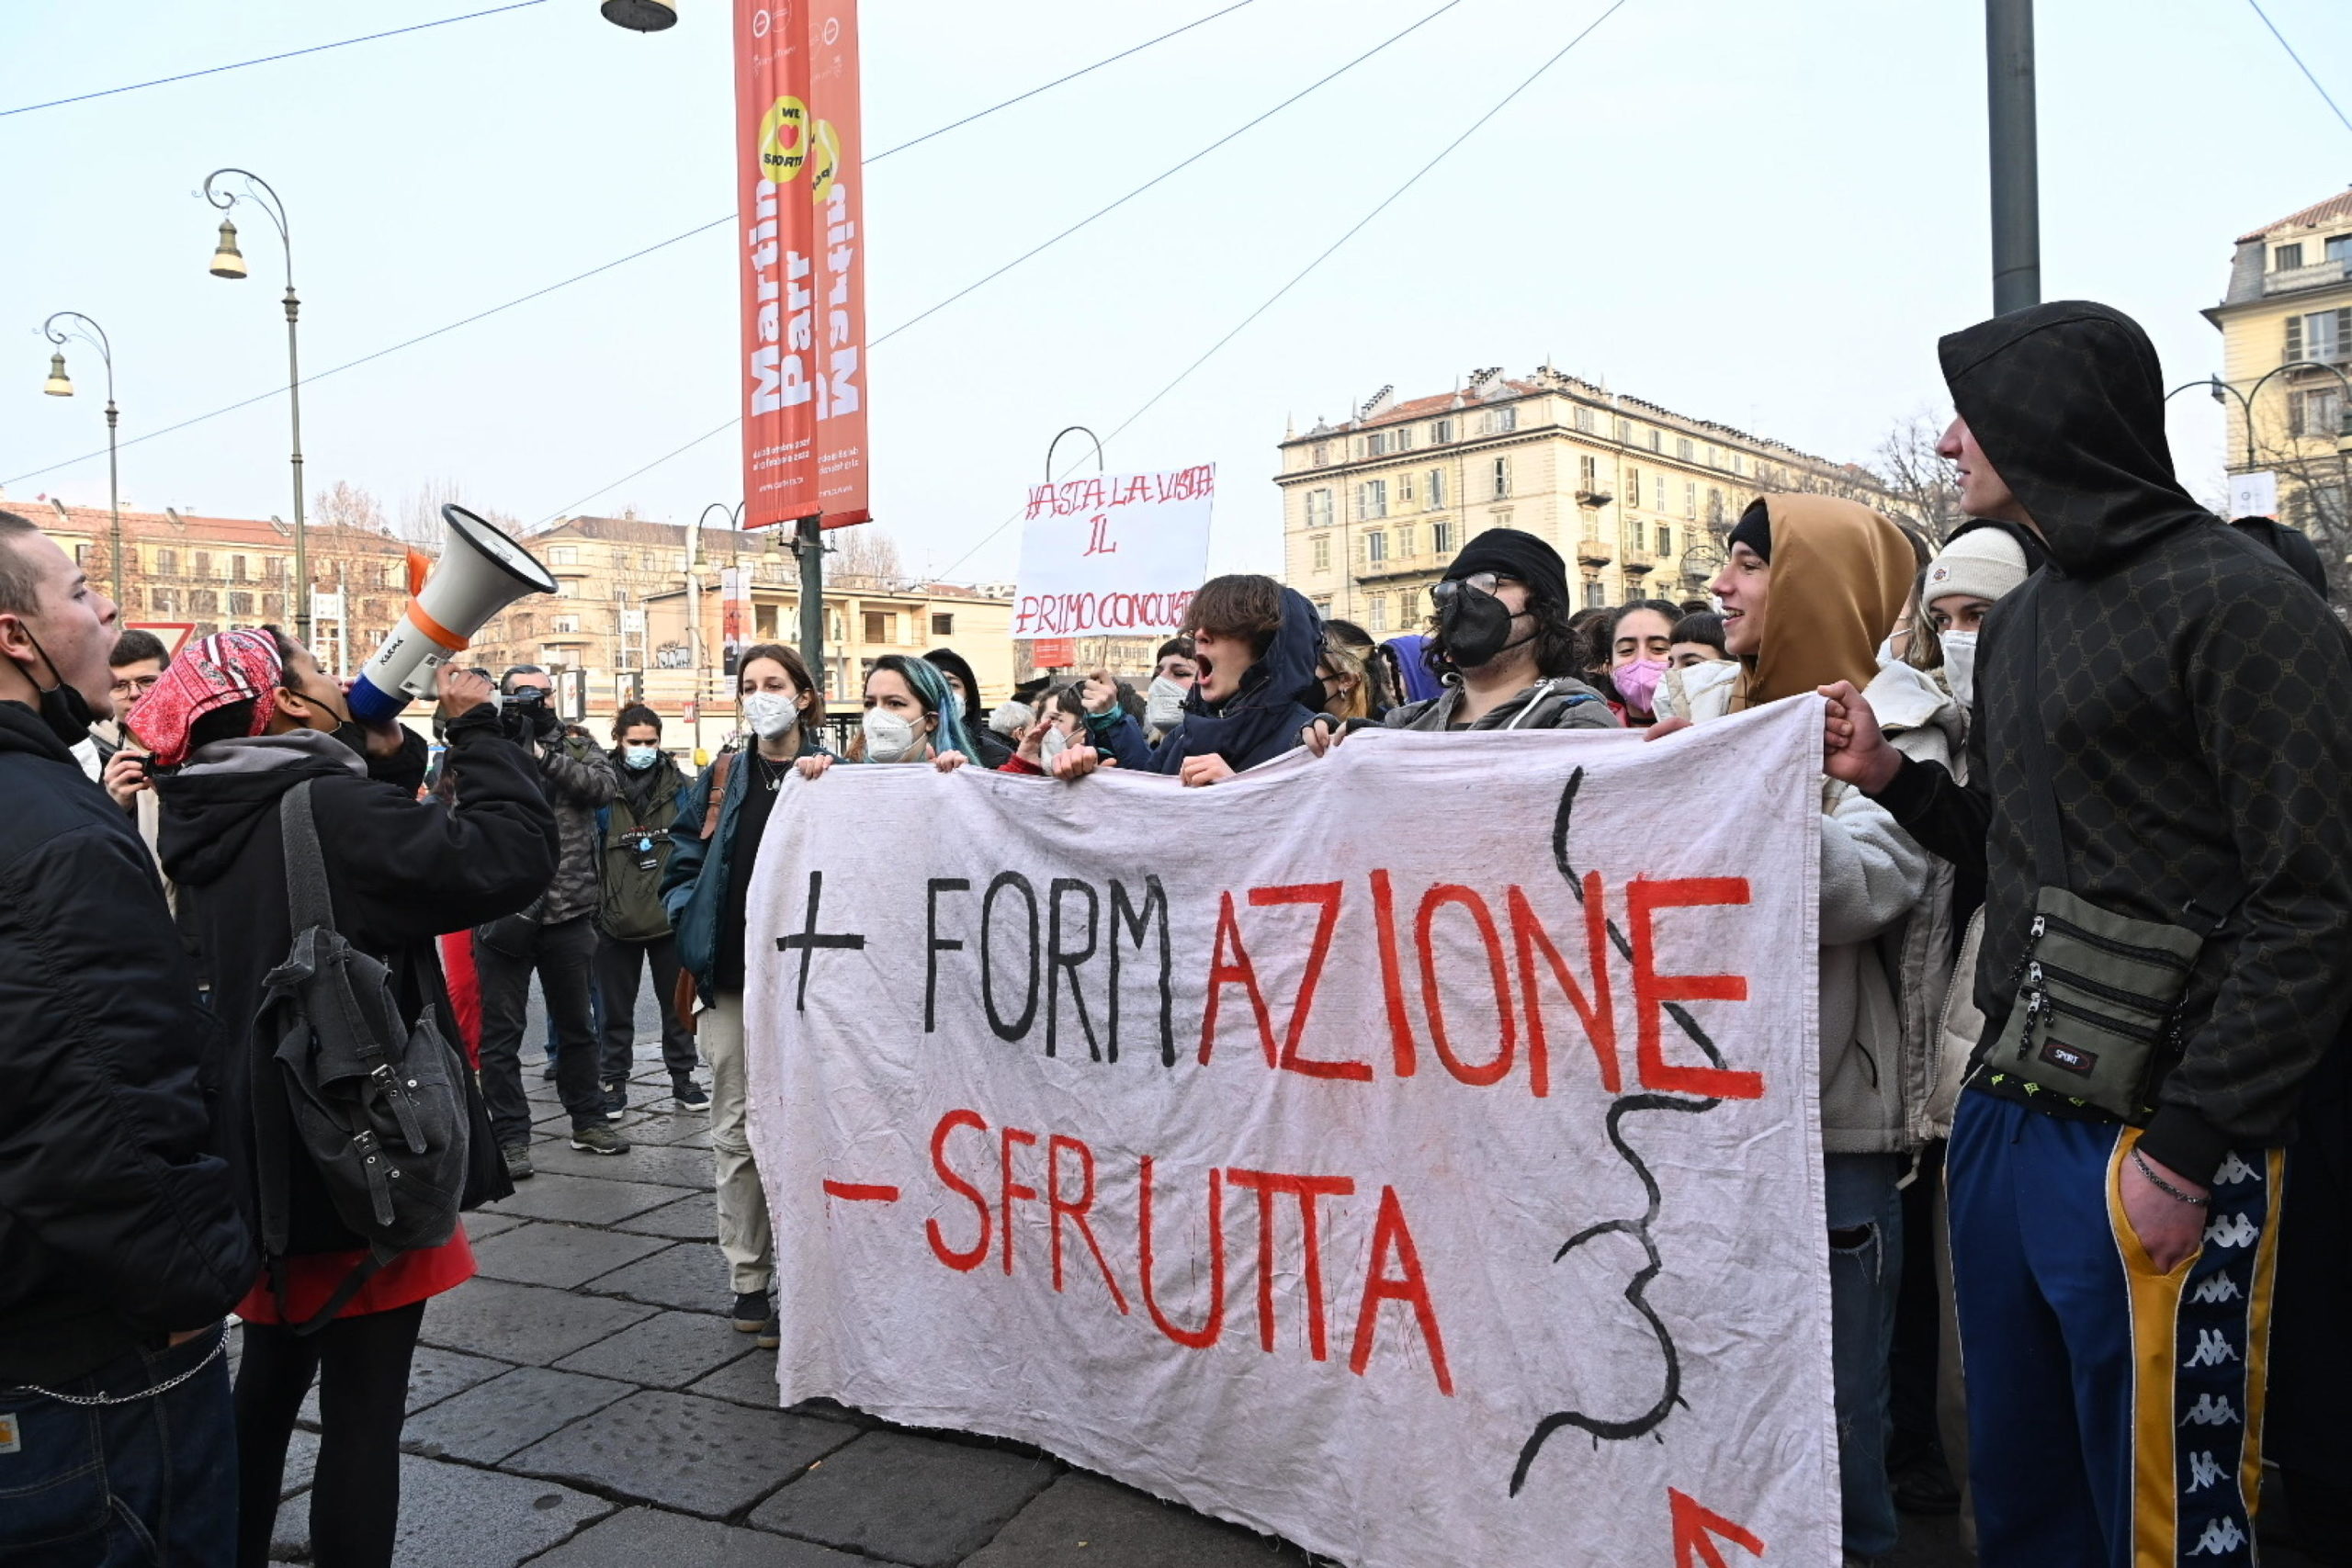 Studenti in piazza a Torino